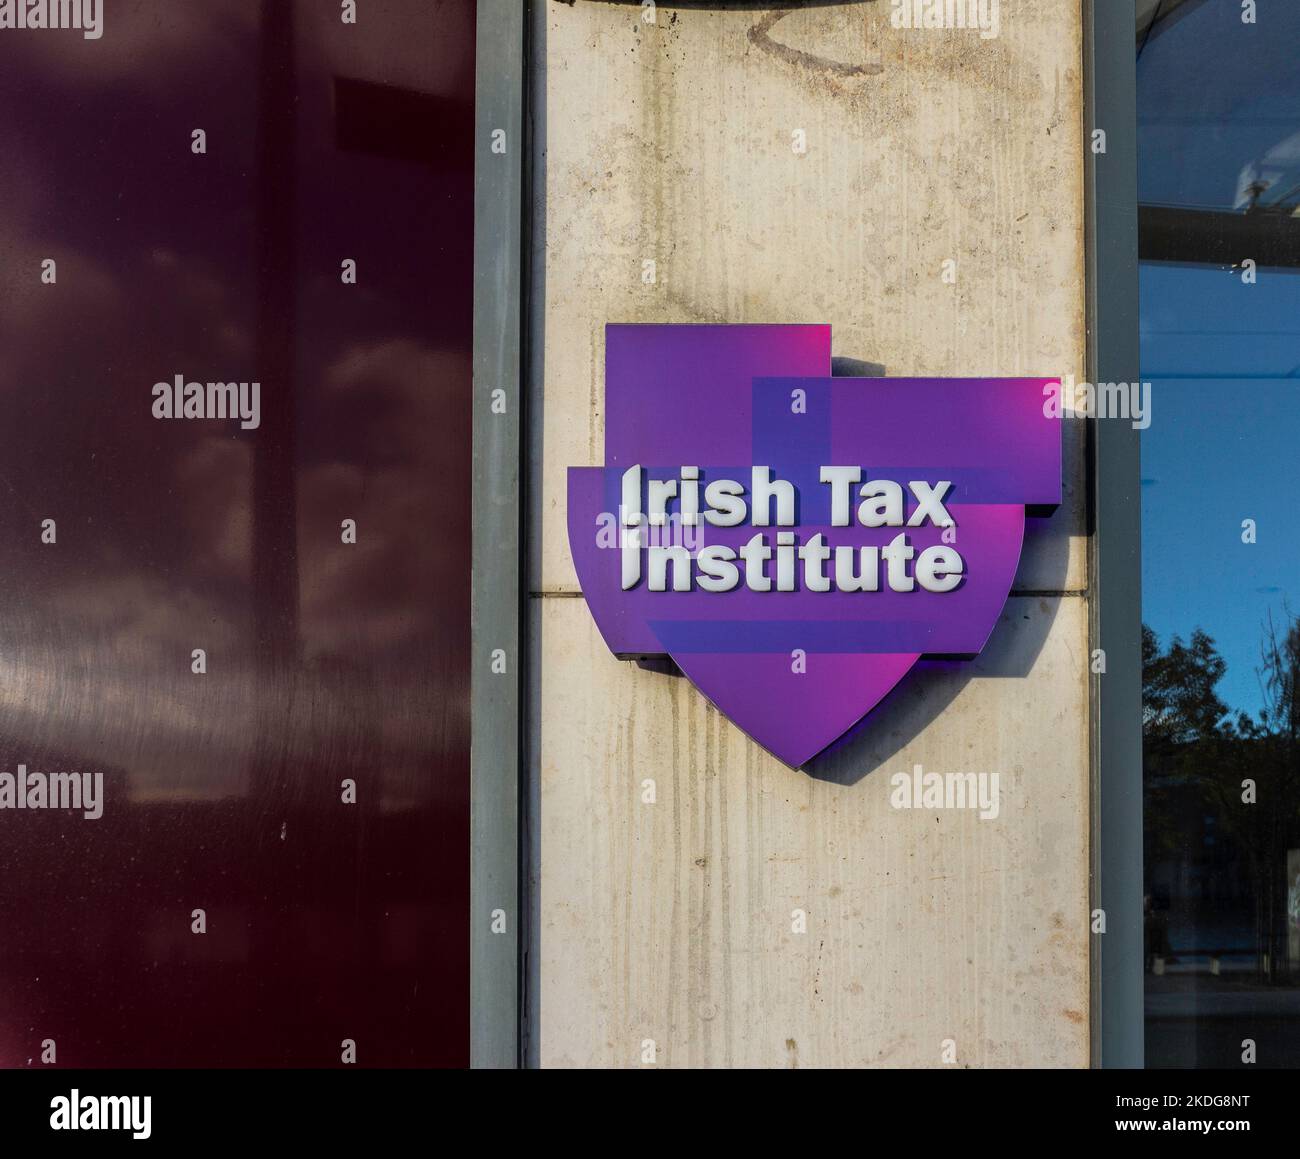 Beschilderung für das Irish Tax Institute, Longboat Quay, Grand Canal Harbour, Dublin, Irland. Das Bildungsgremium für die Steuerberater Irlands. Stockfoto